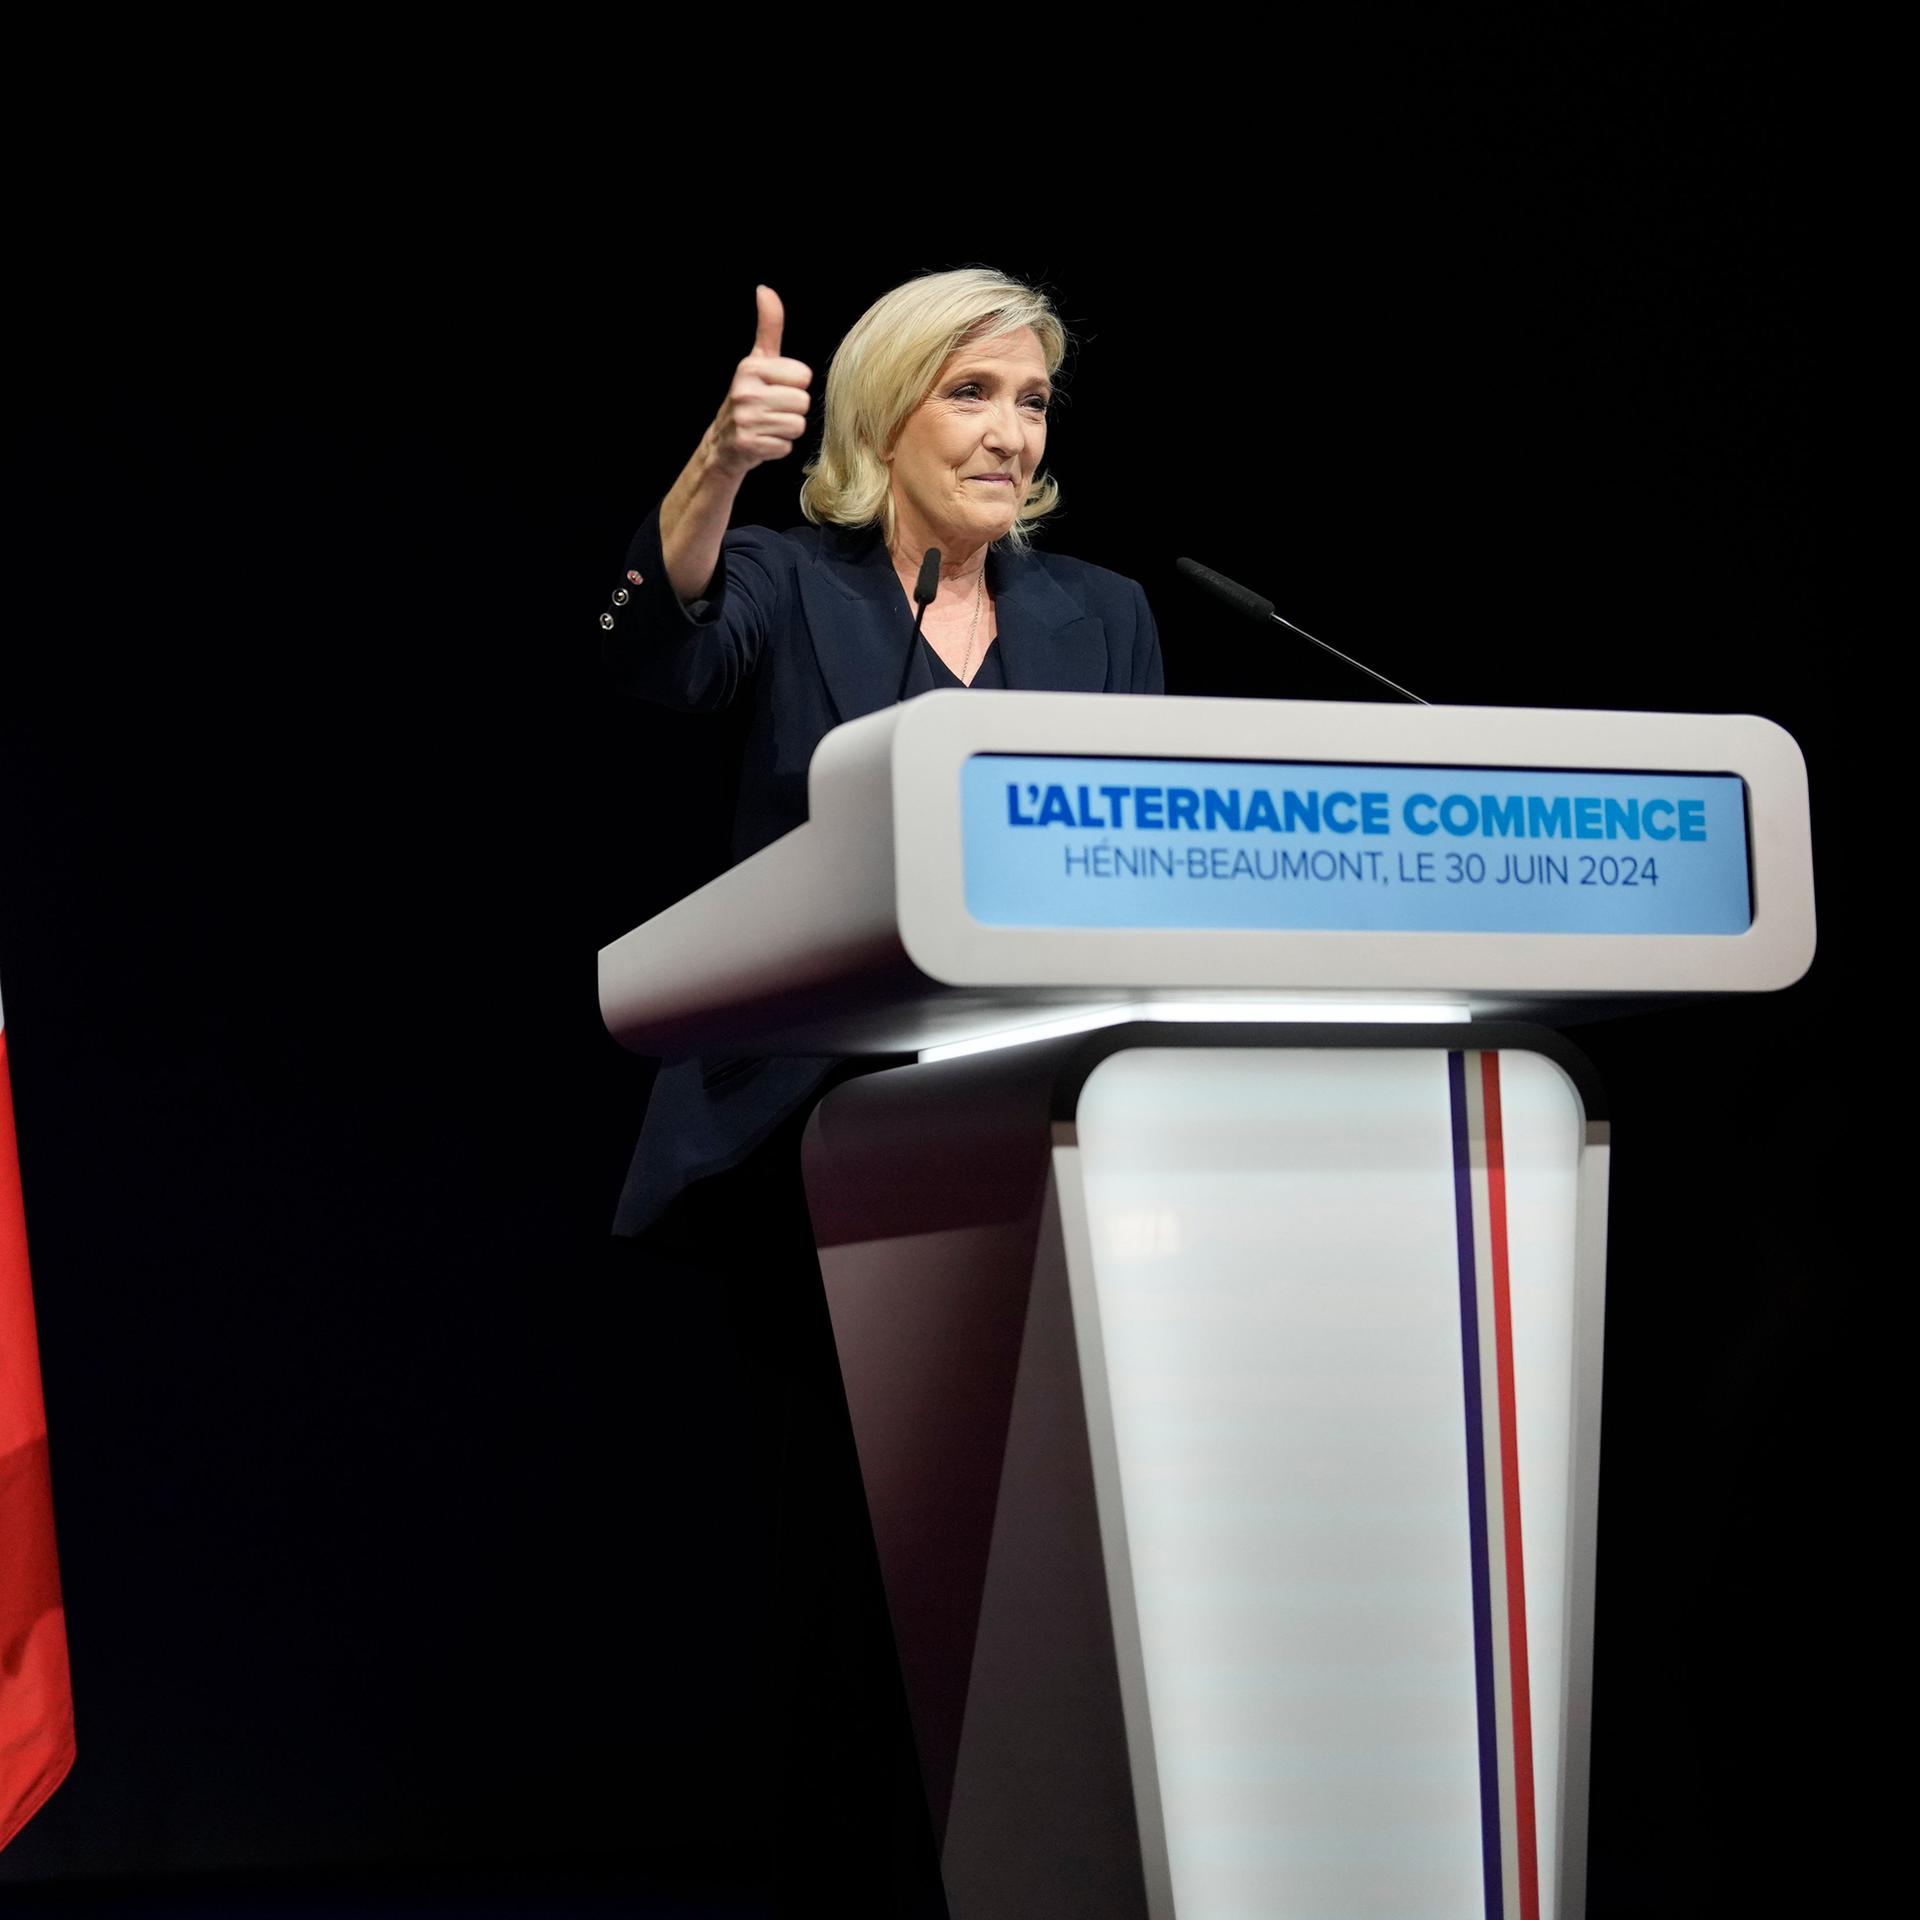 Wahlsieg der extremen Rechten in Frankreich - Macrons Misere